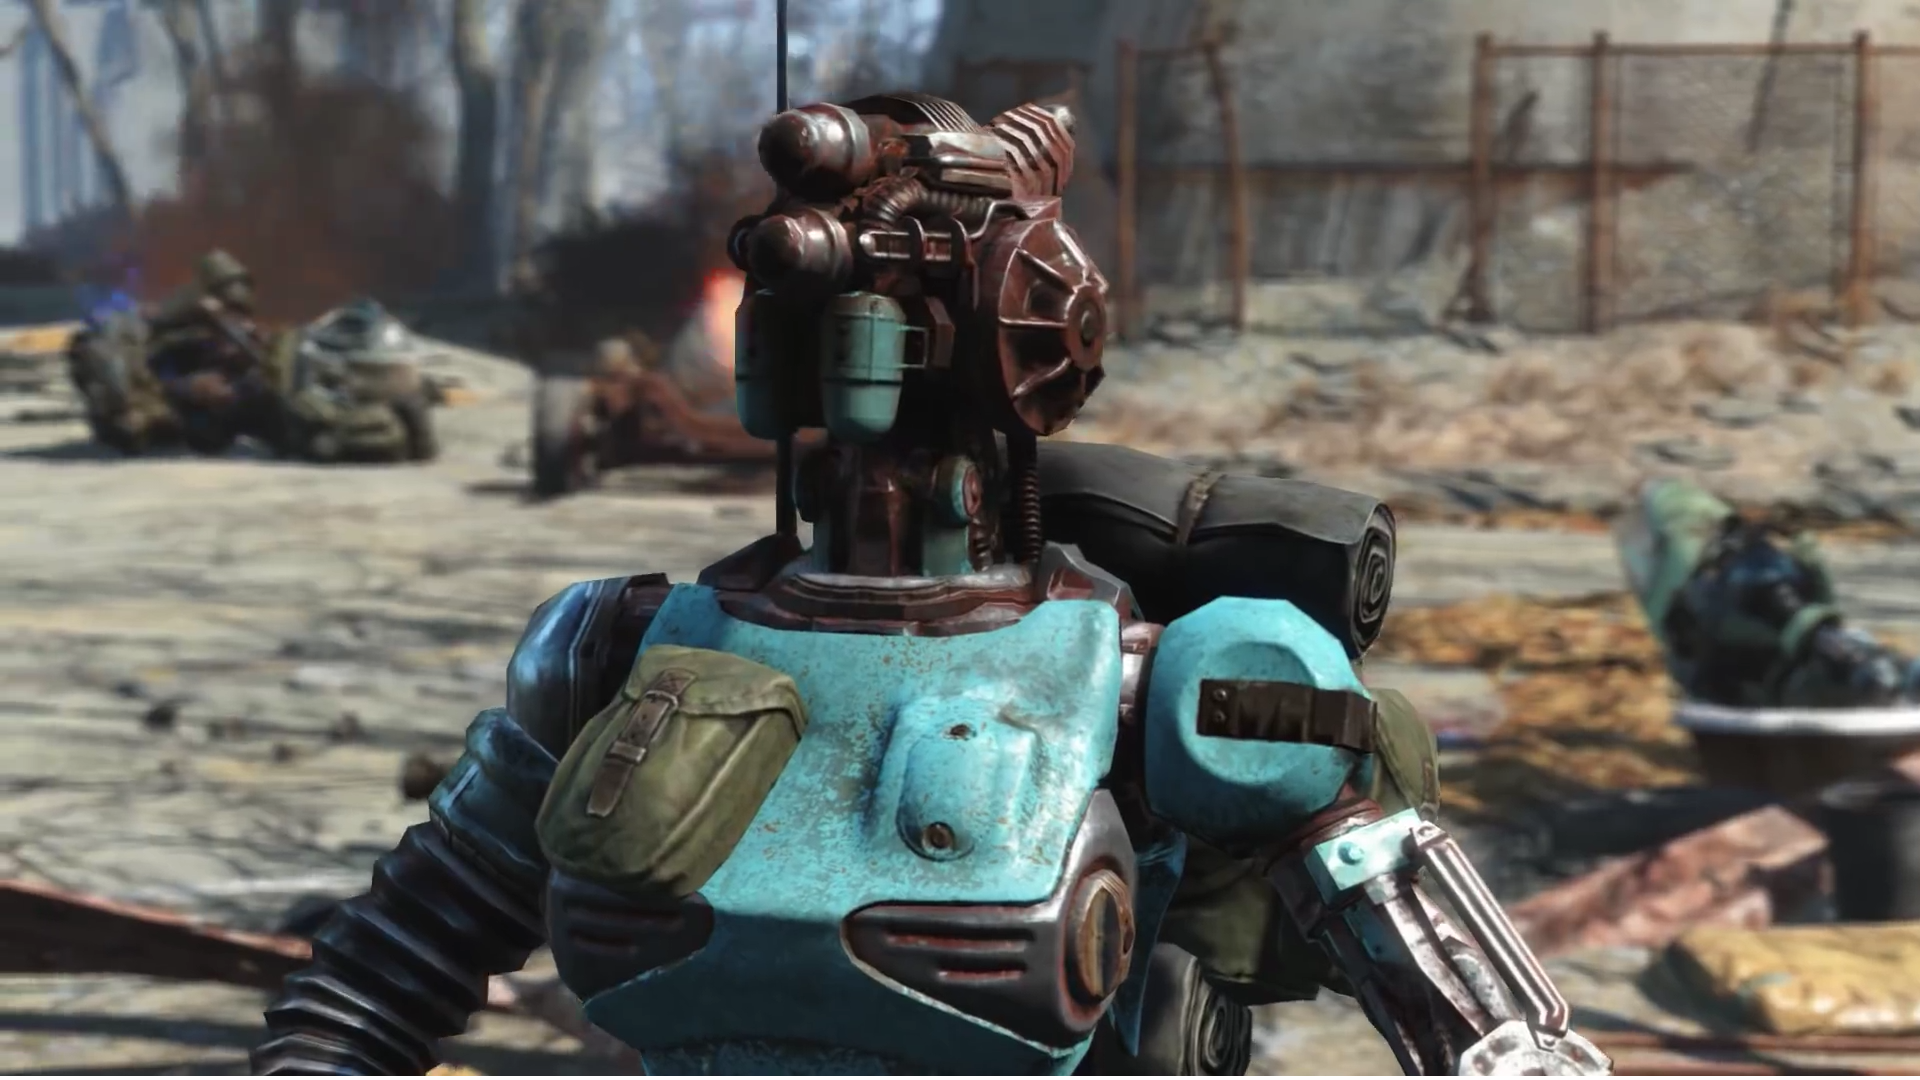 fallout 4 robot companion mod